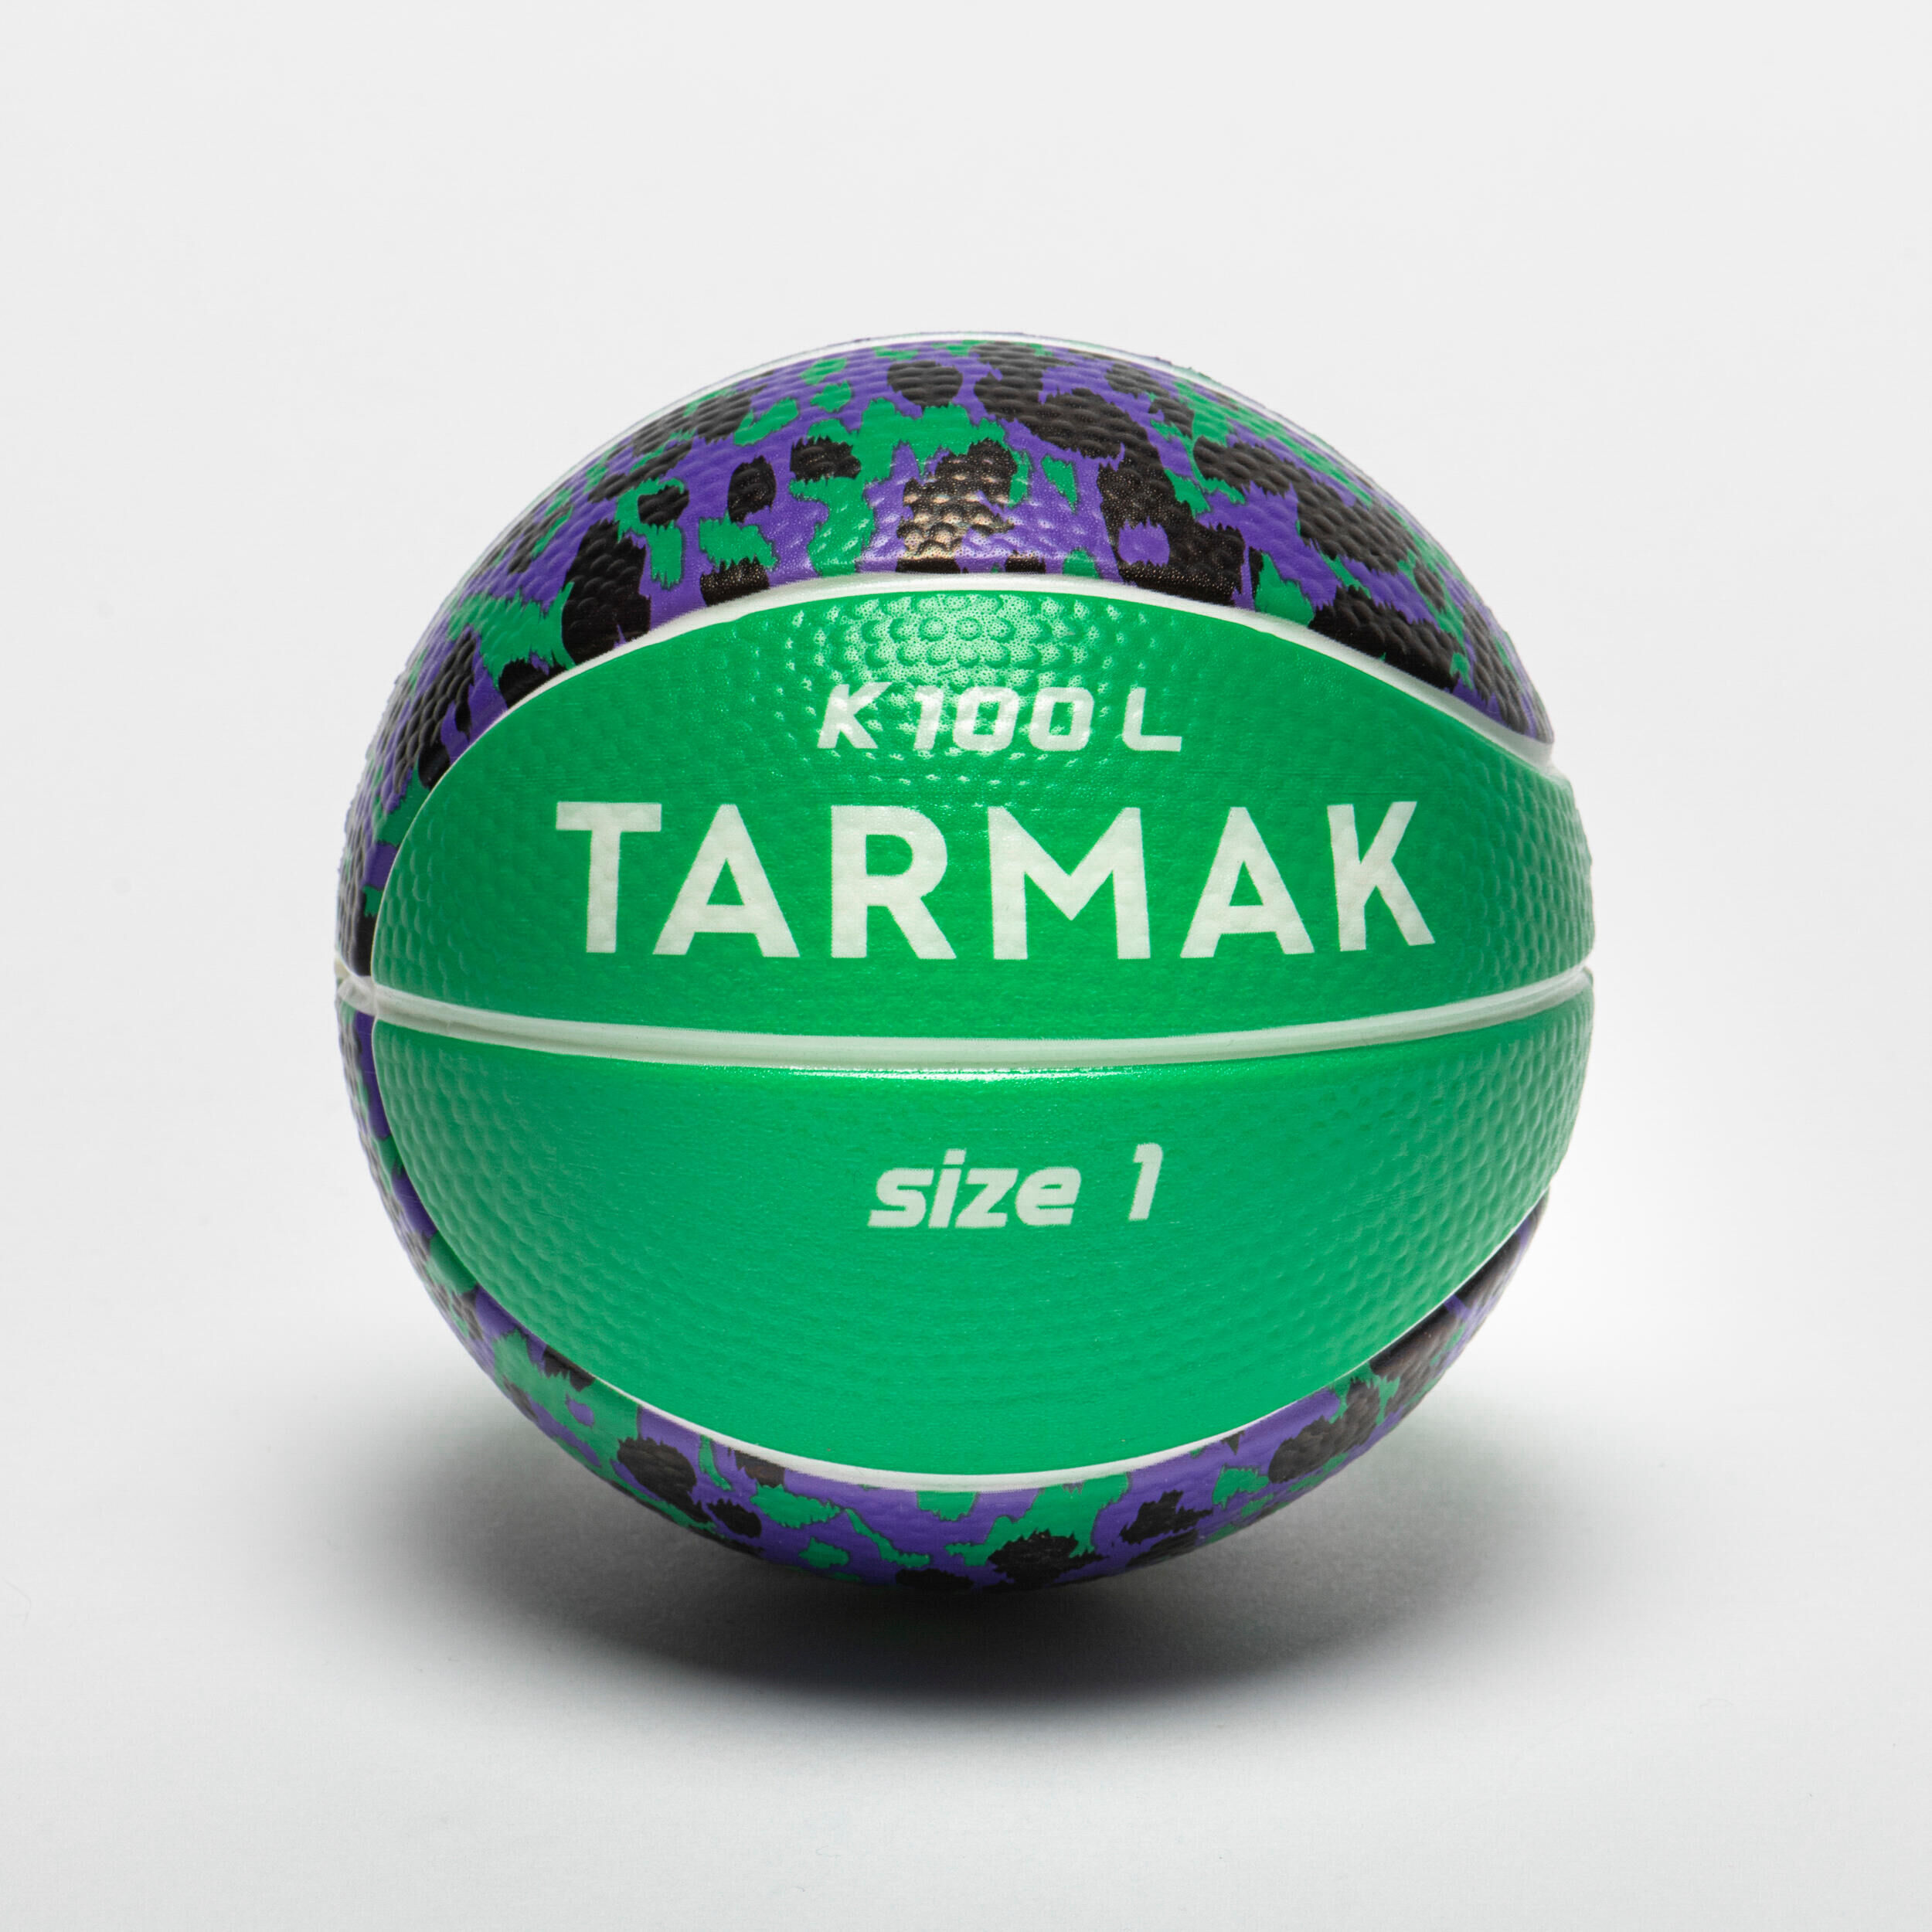 TARMAK Kids' Mini Foam Basketball Size 1 K100 - Green/Black